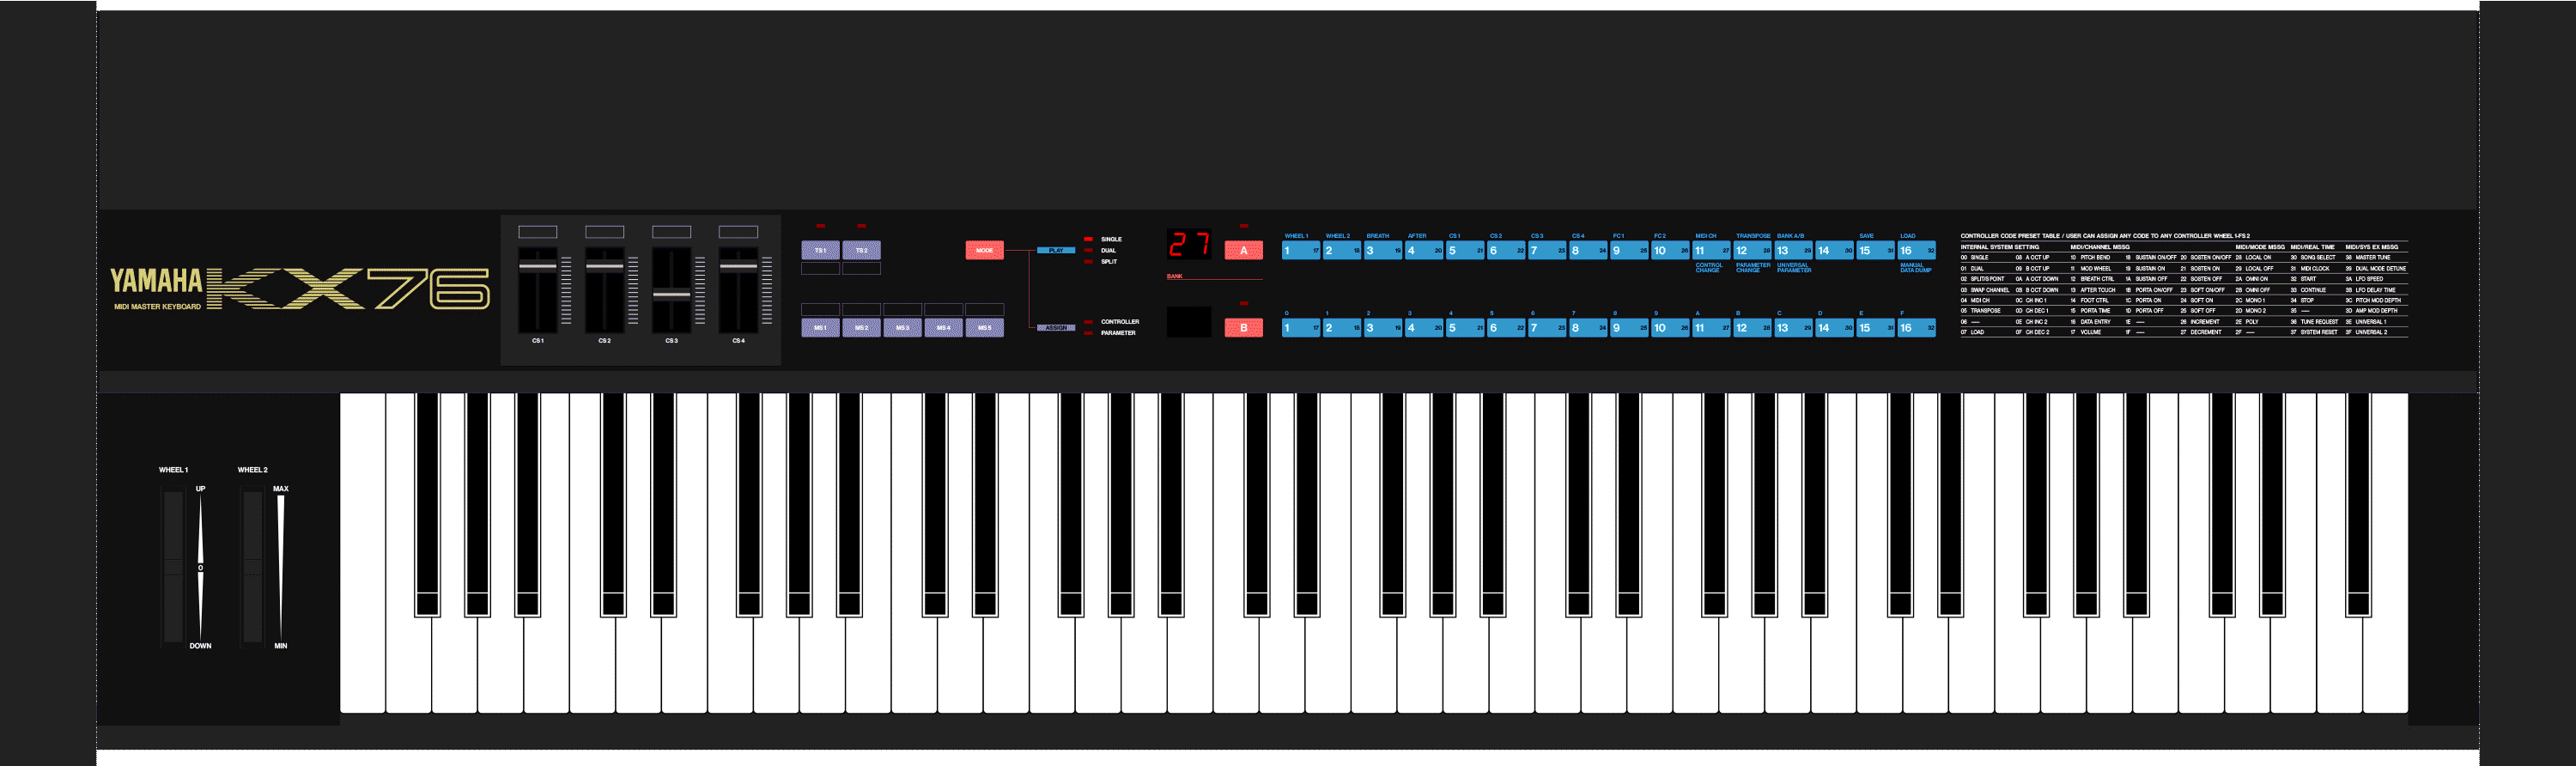 Yamaha KX76 MIDI controller keyboard